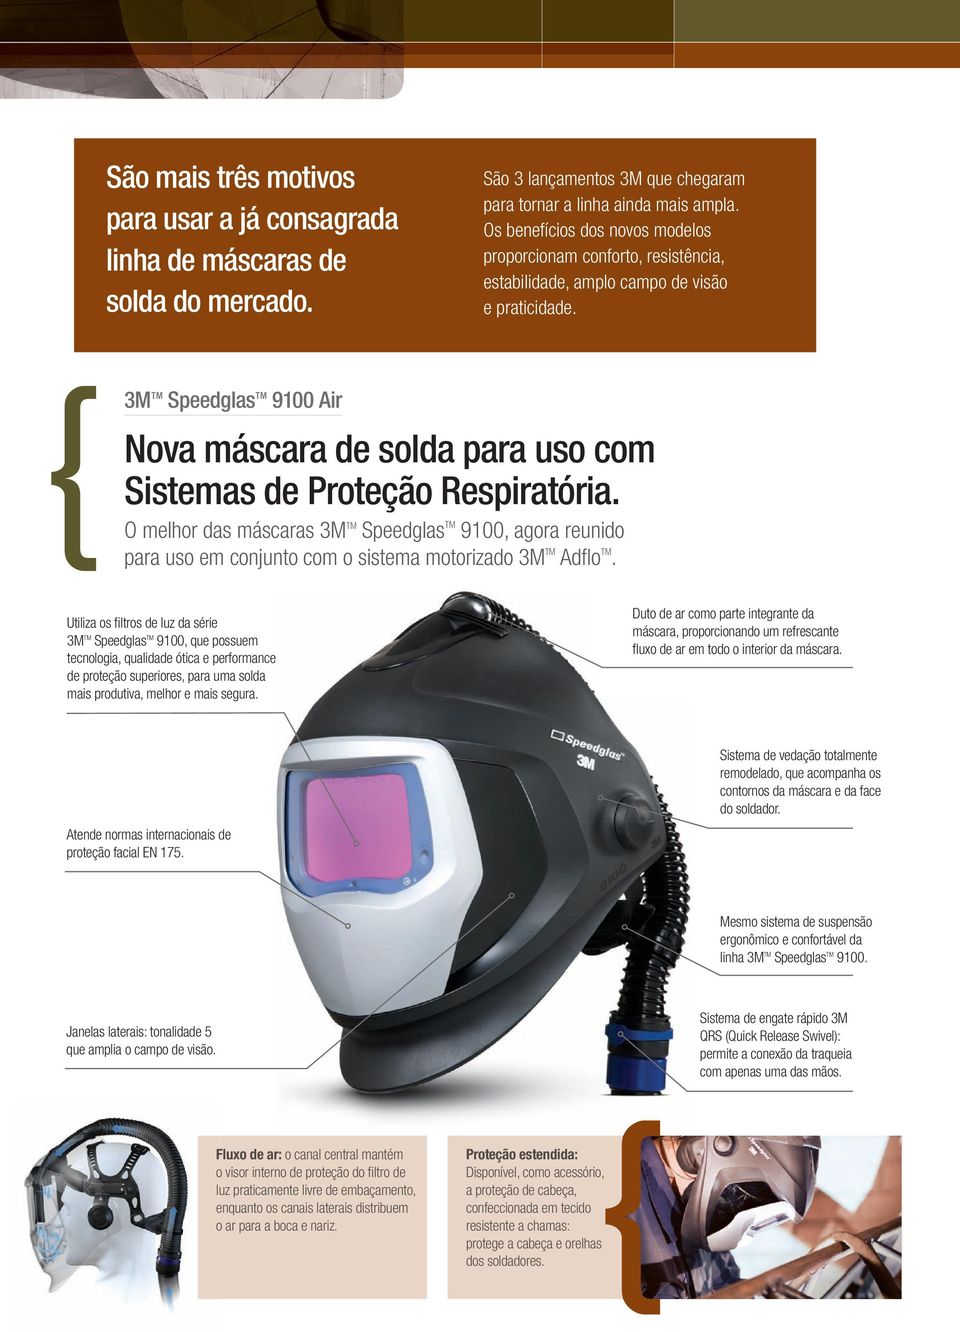 3M TM Speedglas TM 9100 Air Nova máscara de solda para uso com Sistemas de Proteção Respiratória.